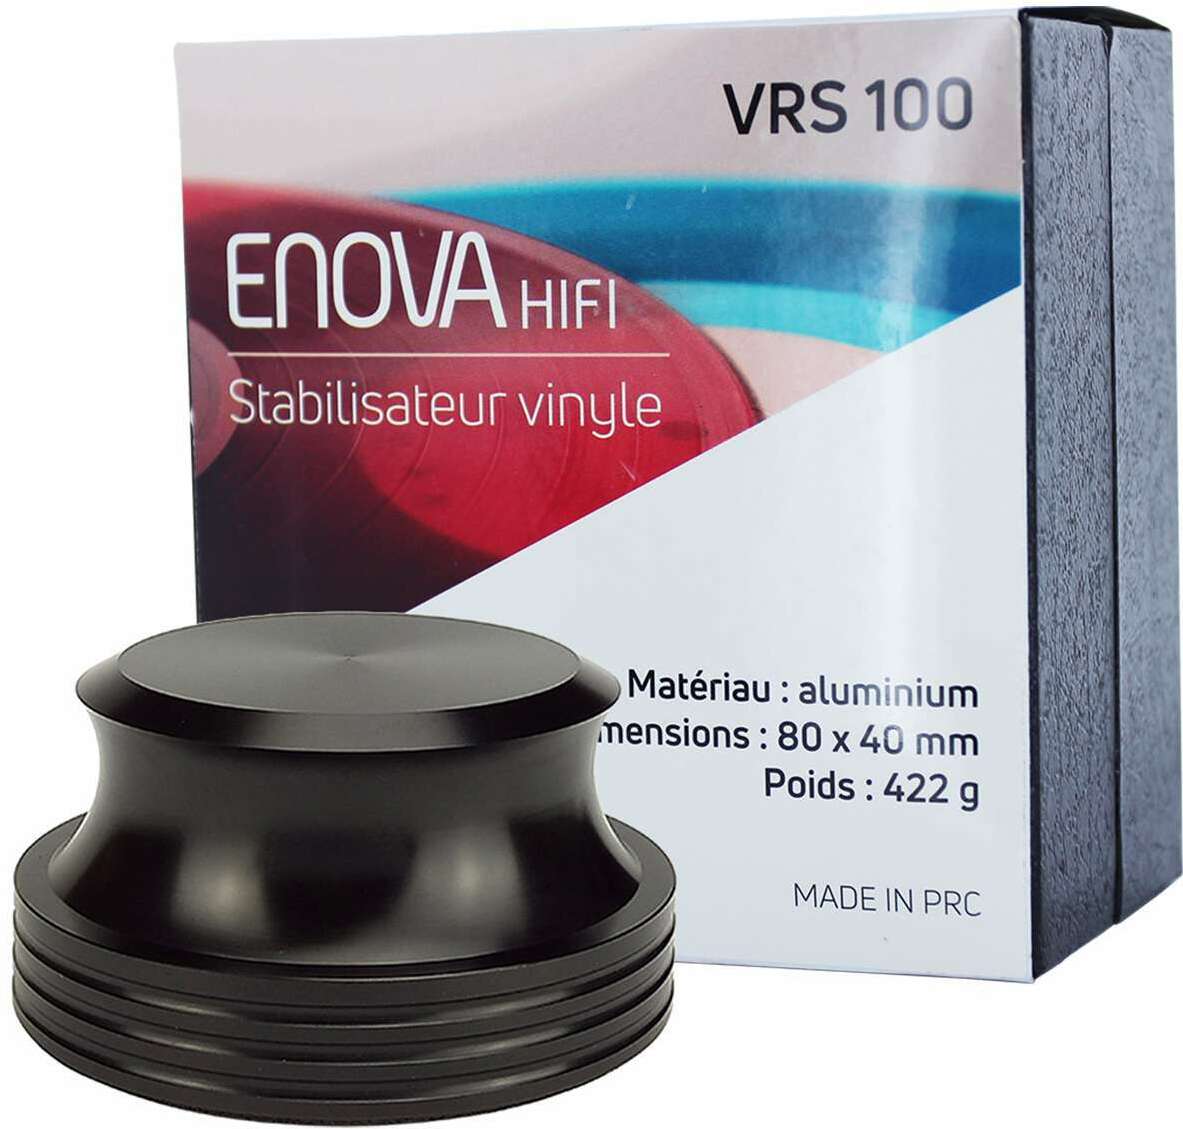 Enova Hifi Stabilisateur Vinyle - Vrs 100 - Autre Accessoires Dj - Main picture